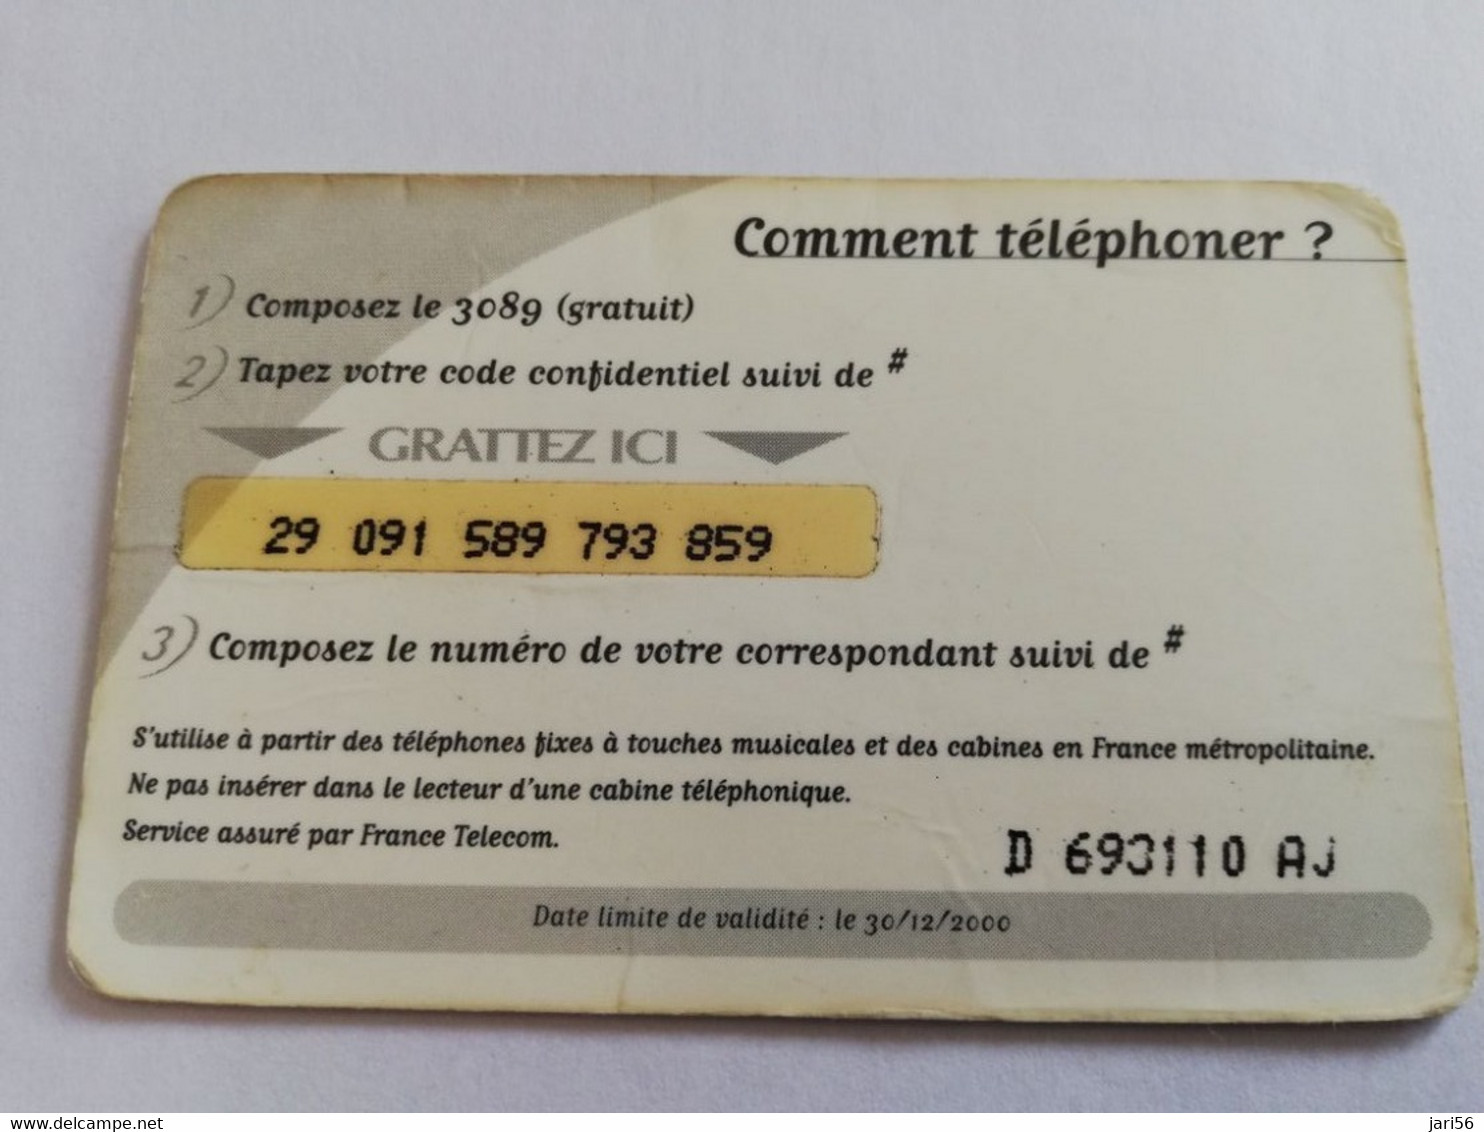 FRANCE/FRANKRIJK  LAVENDEL FIELD    100FR  PREPAID  USED    ** 5984** - Mobicartes (GSM/SIM)